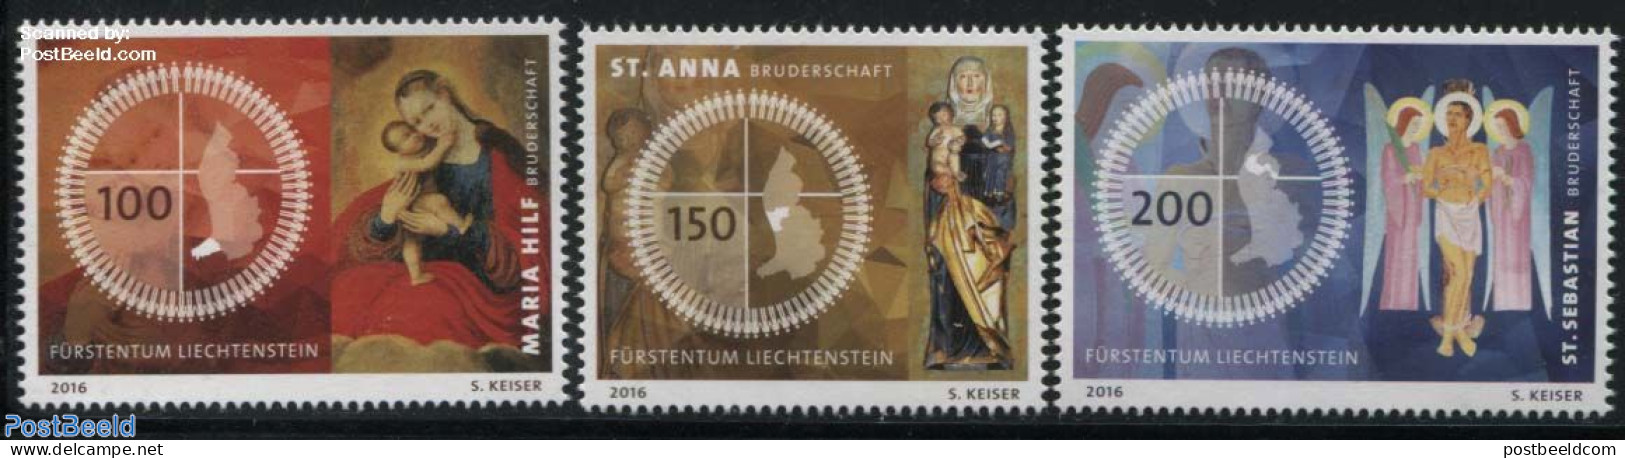 Liechtenstein 2016 Fraternities In Liechtenstein 3v, Mint NH, Religion - Various - Religion - Maps - Ungebraucht